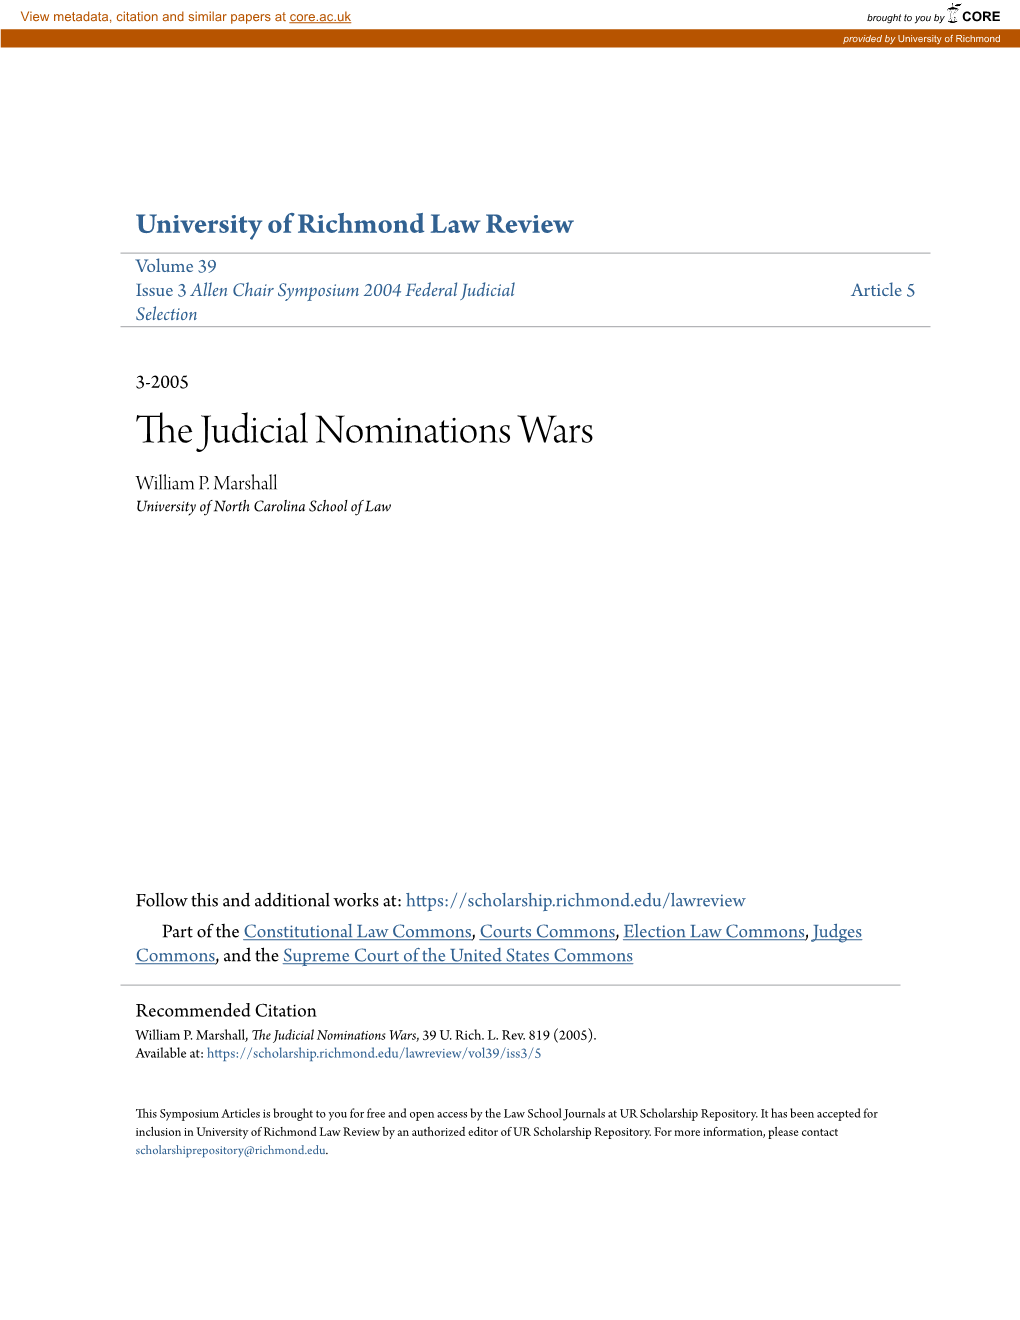 The Judicial Nominations Wars, 39 U